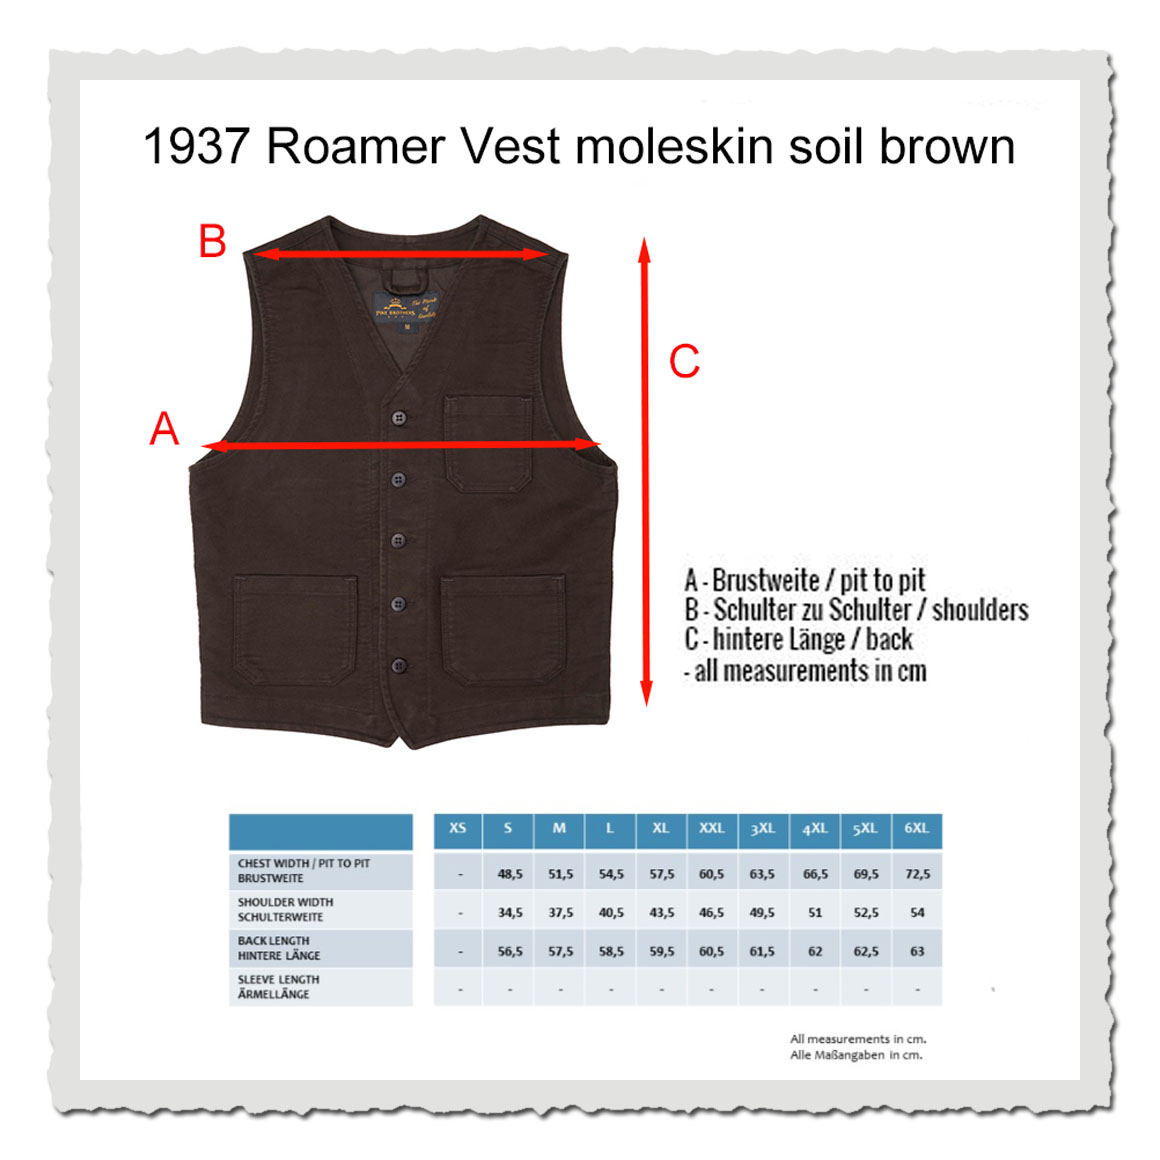 1937 Roamer Vest Moleskin soil brown